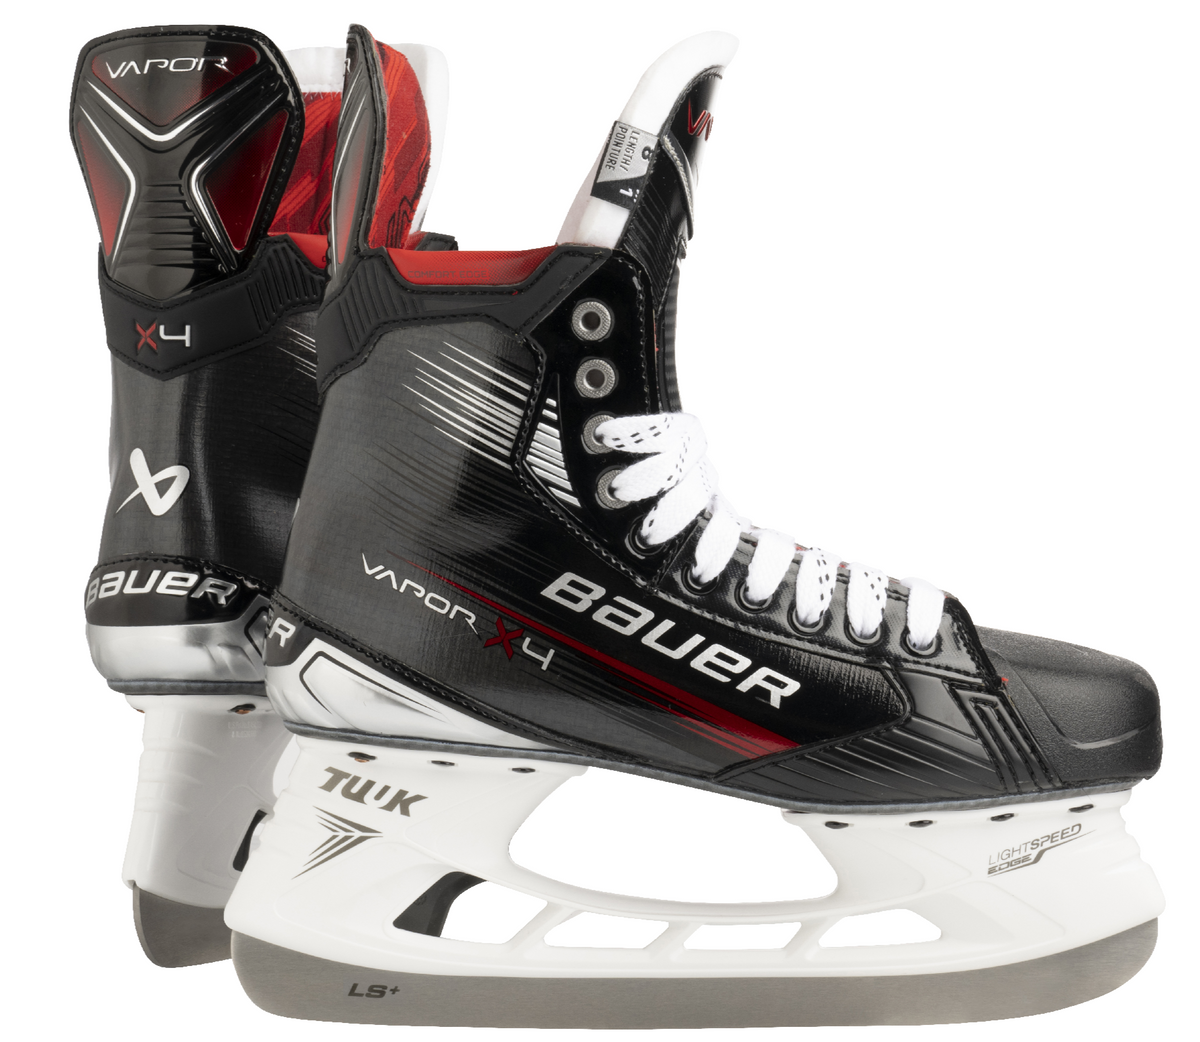 Bauer Vapor X4 Senior Hockey Skates